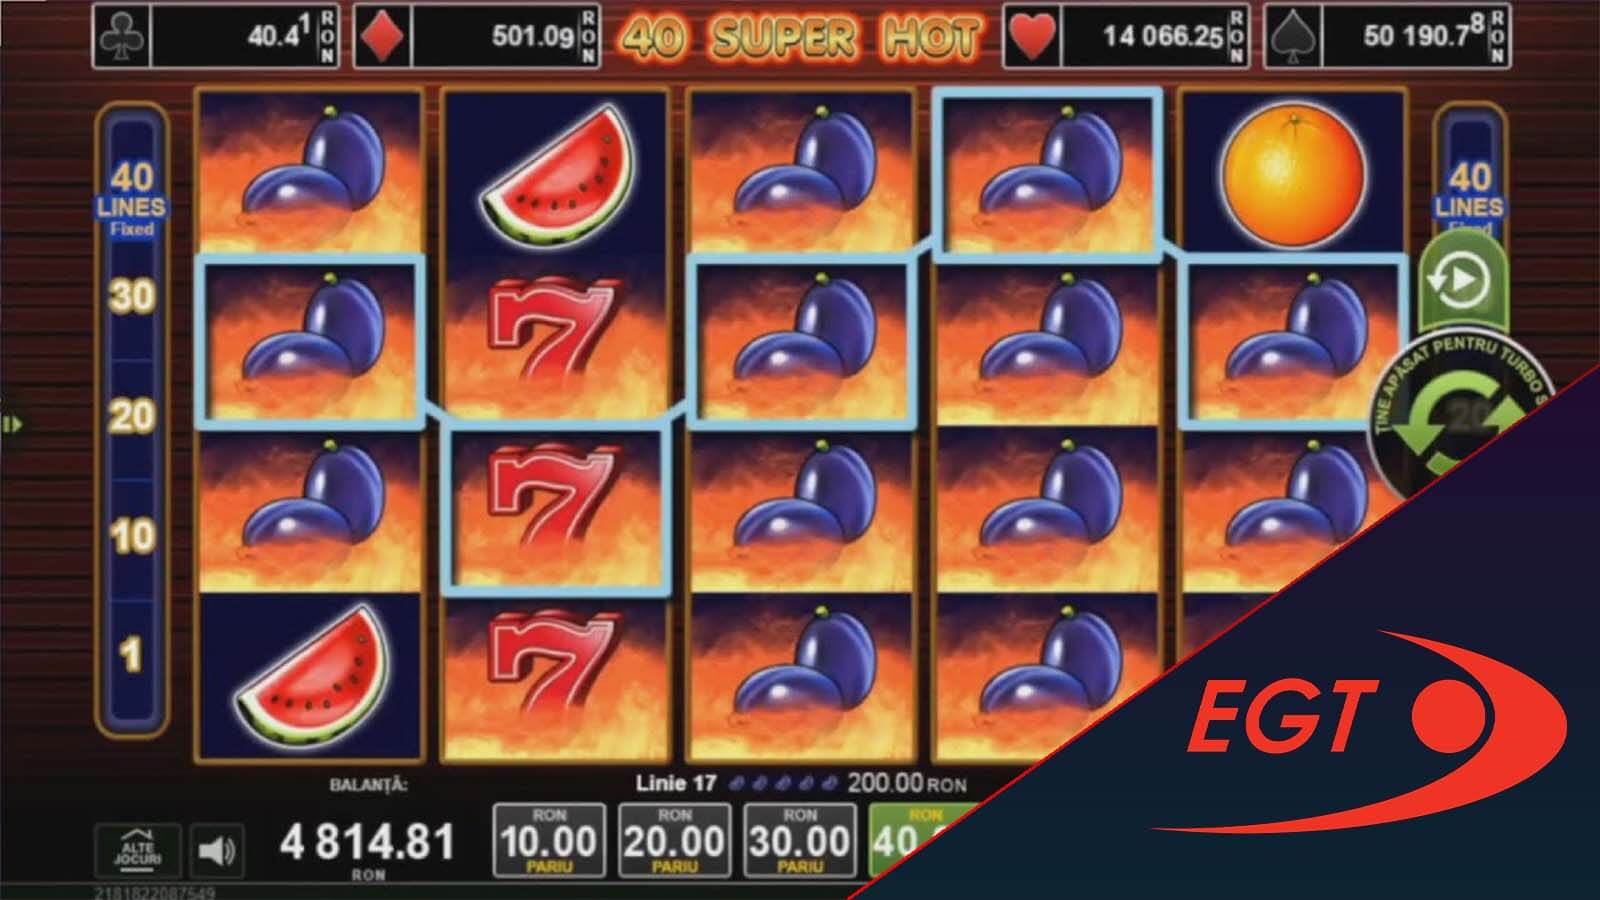 EGT Slots - 40 Super Hot